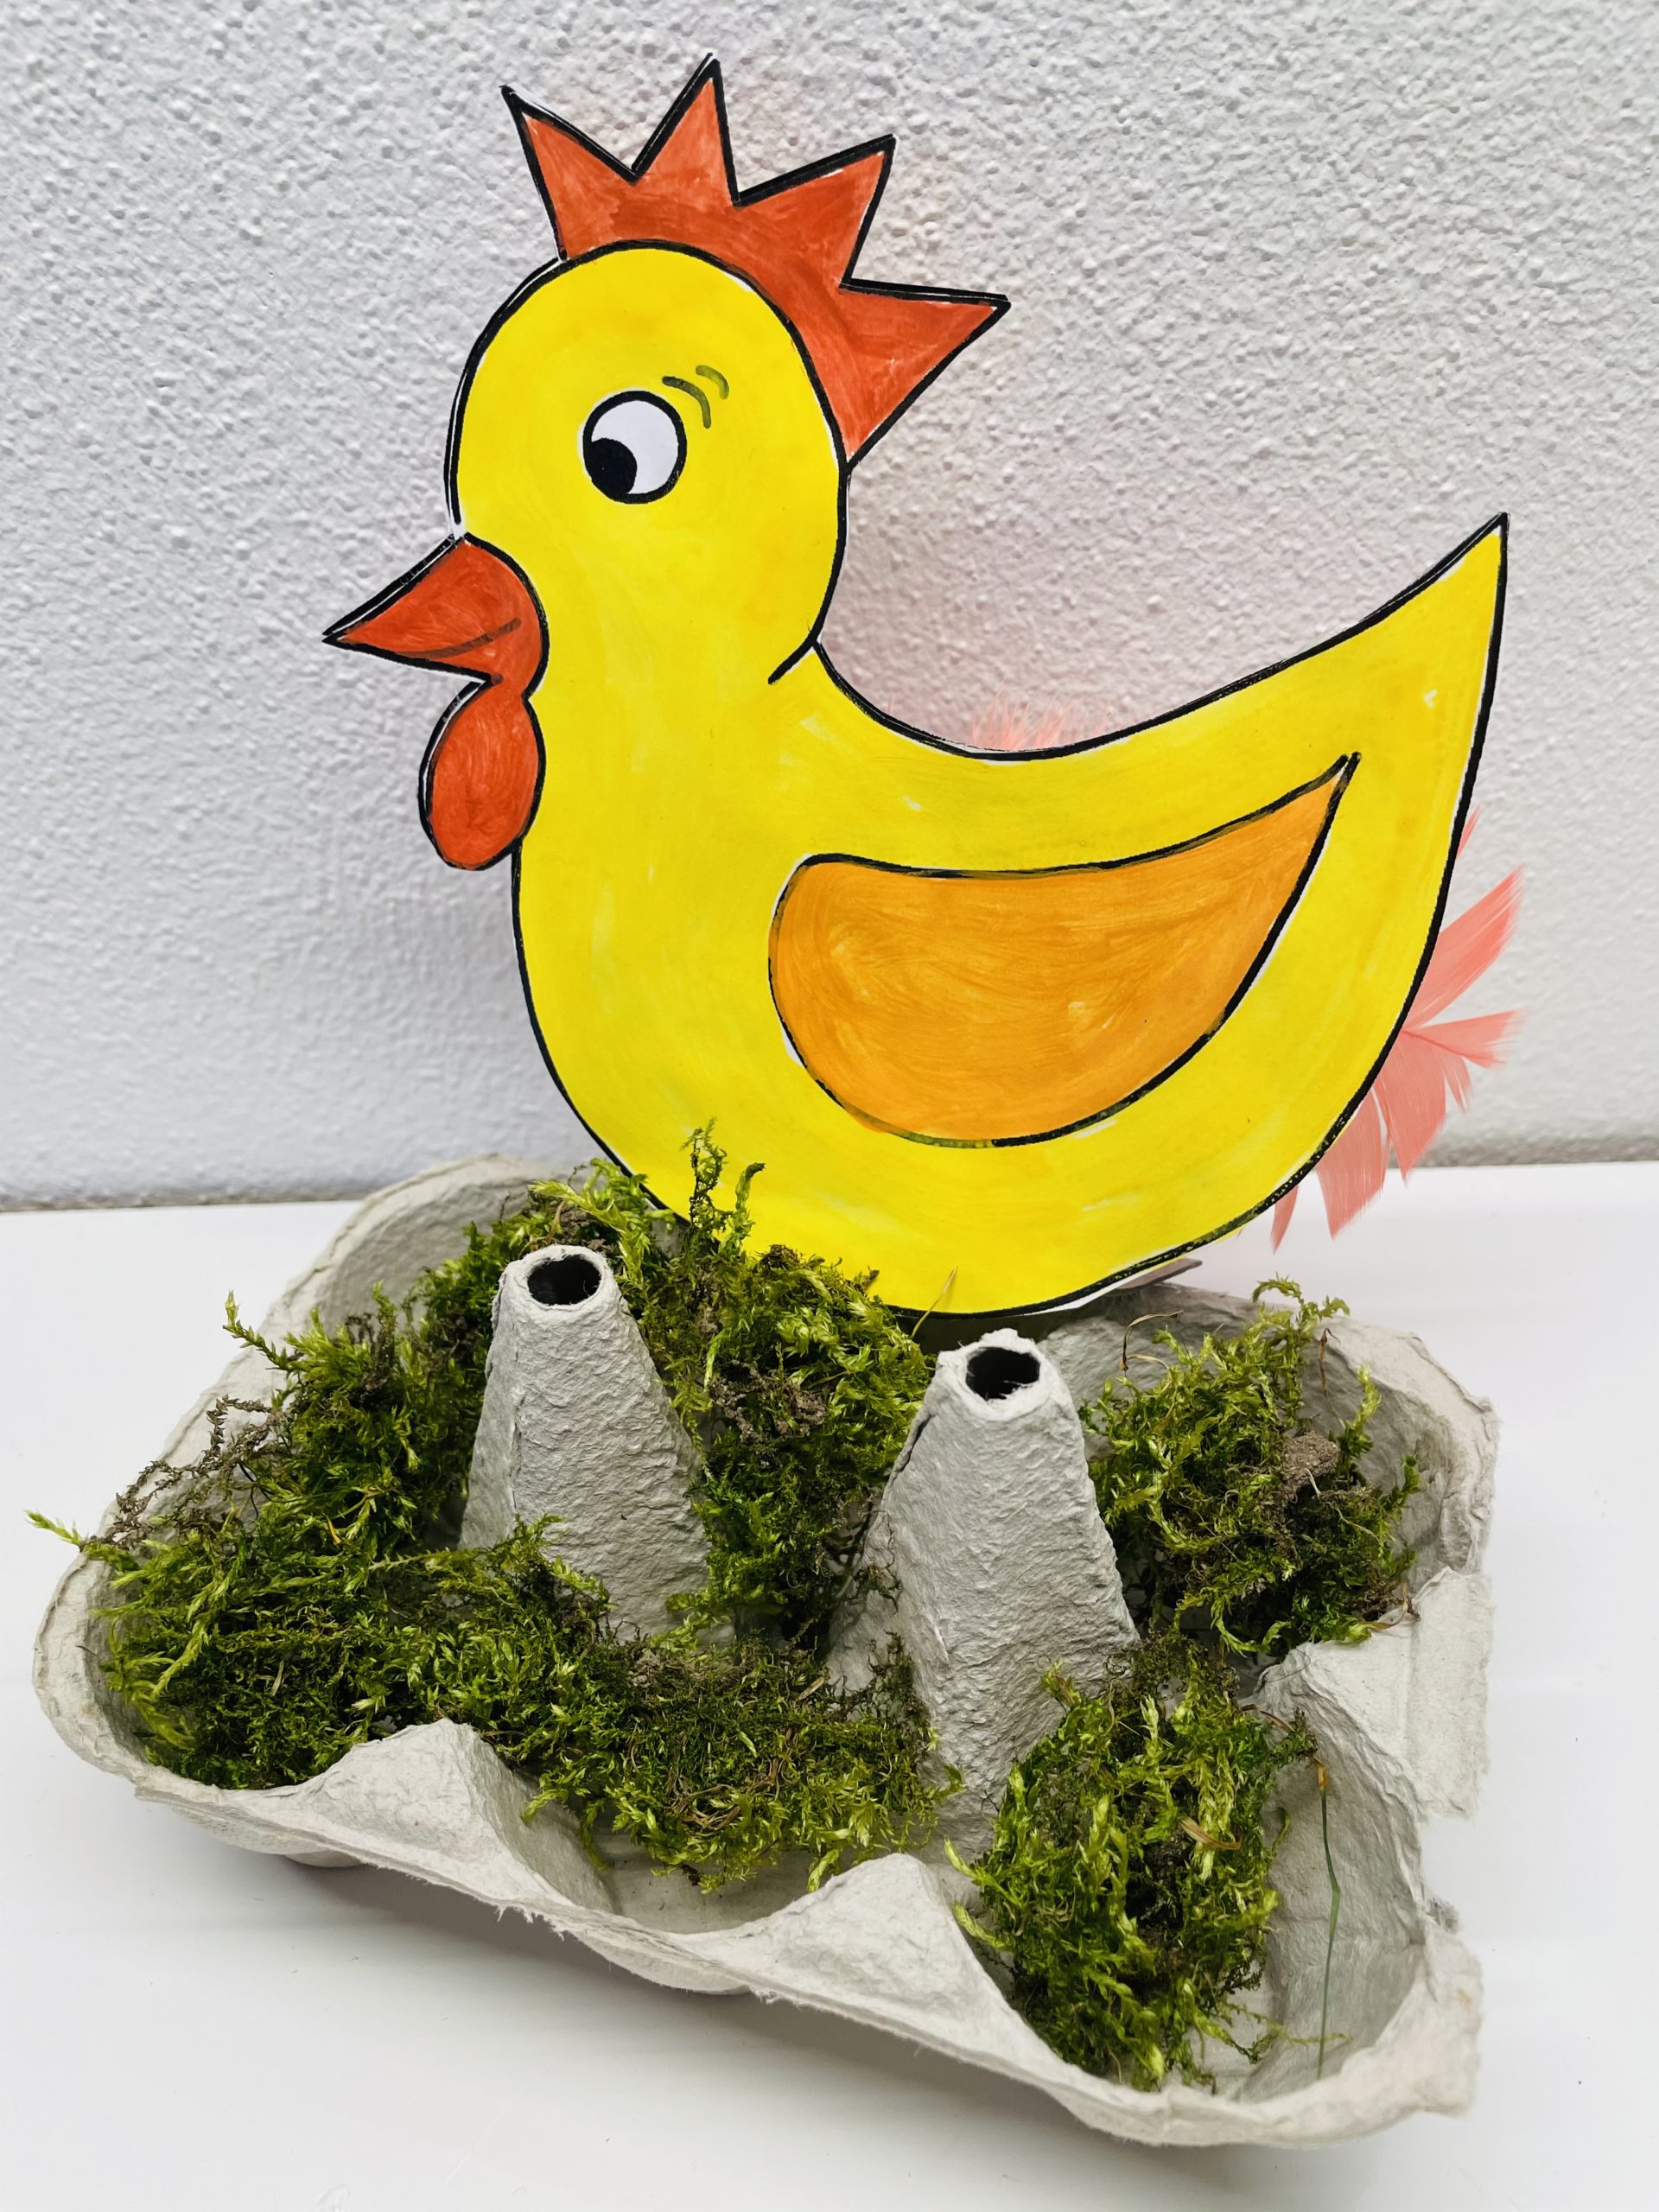 Bild zum Schritt 18 für das Bastel- und DIY-Abenteuer für Kinder: 'Dekoriert das Nest mit etwas frischem oder getrockneten Moos.'